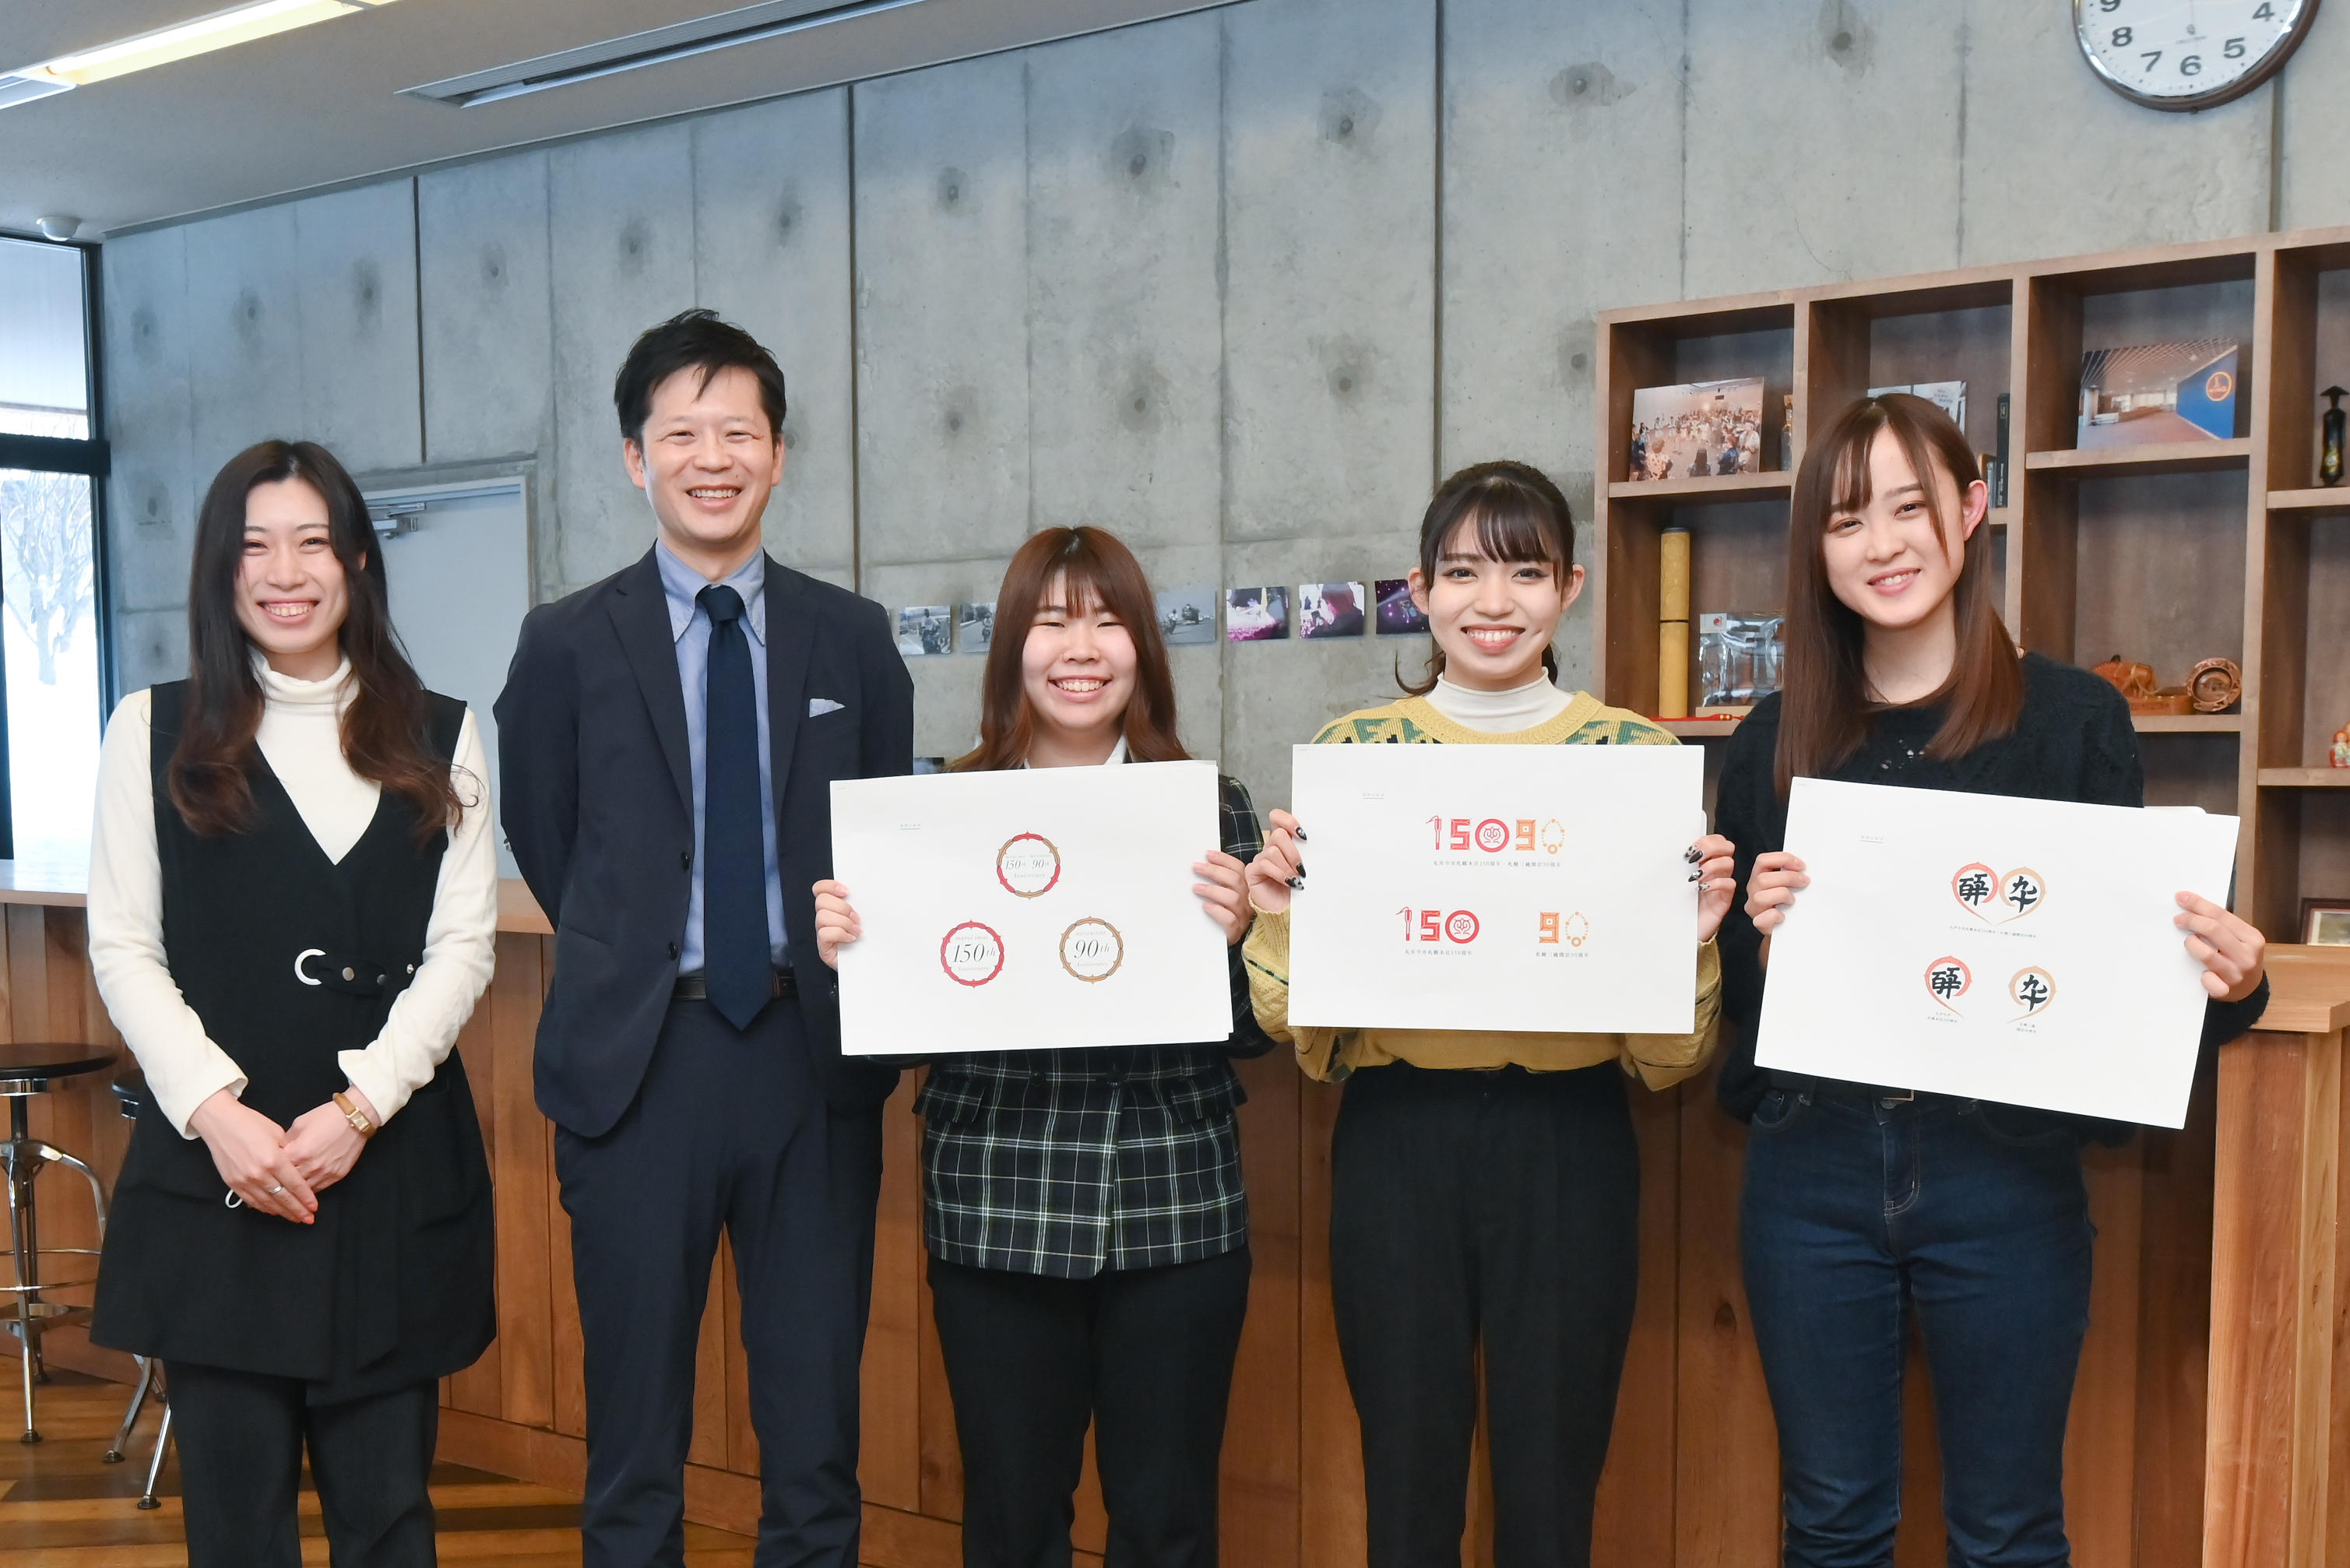 札幌大学ウレシパクラブが(株)札幌丸井三越と共同で周年ロゴを制作